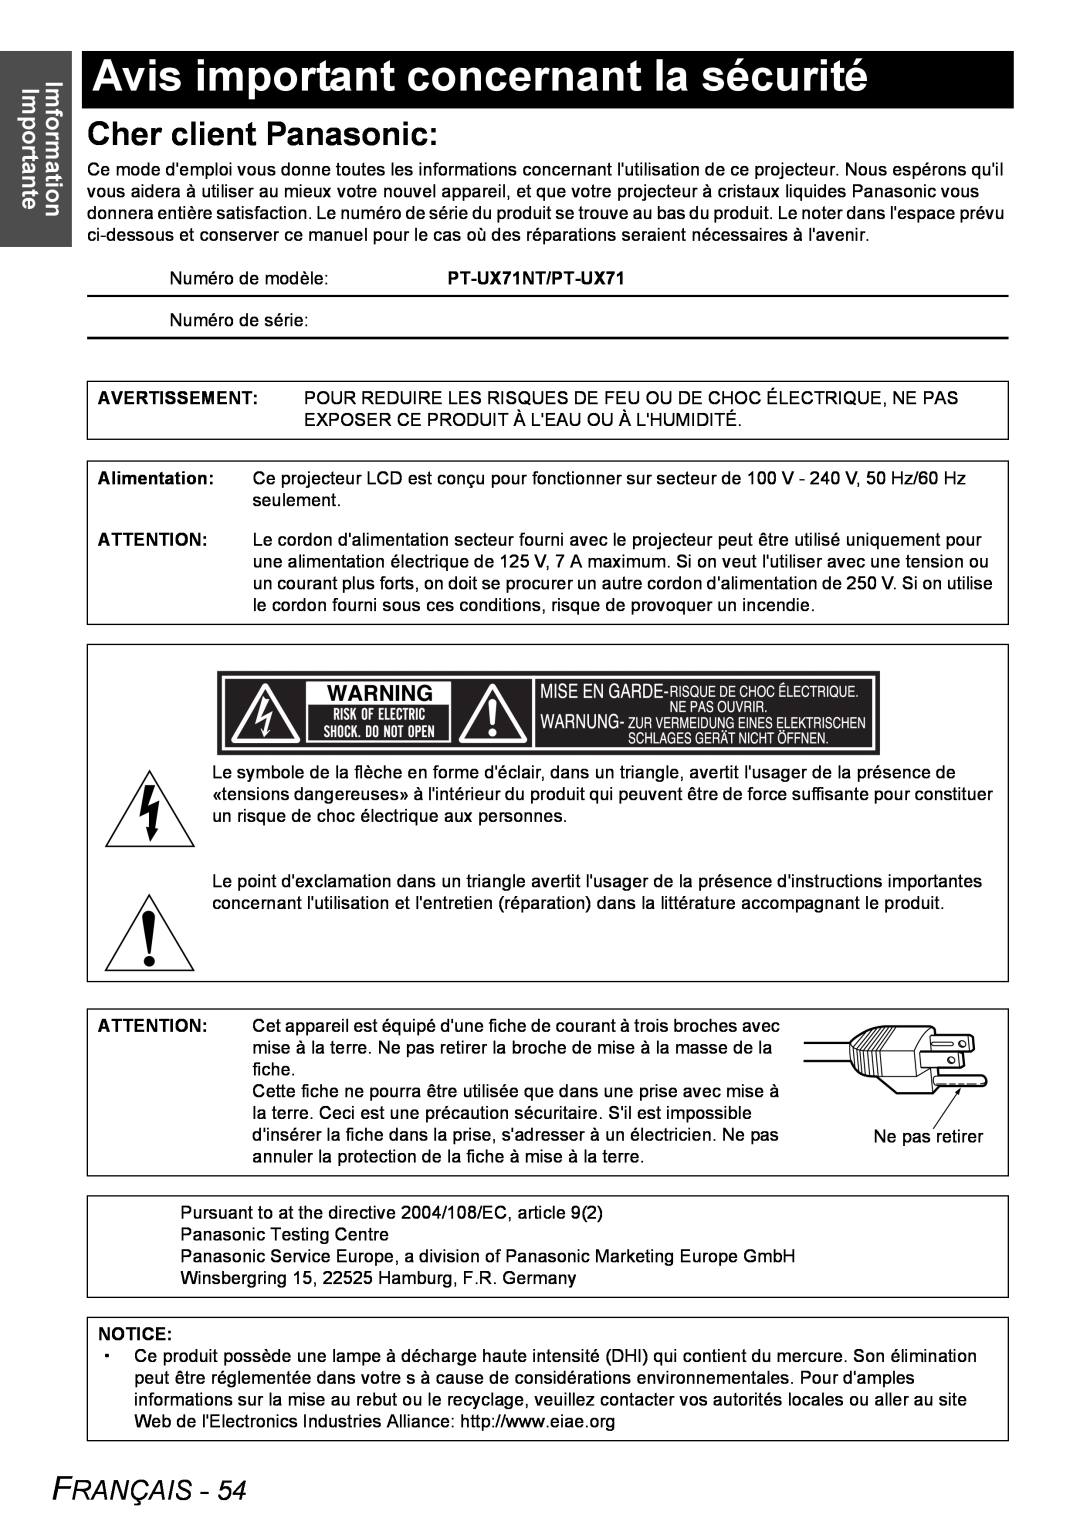 Philips PT-LB51SU manual Avis important concernant la sécurité, Cher client Panasonic, Français, Imformation Importante 